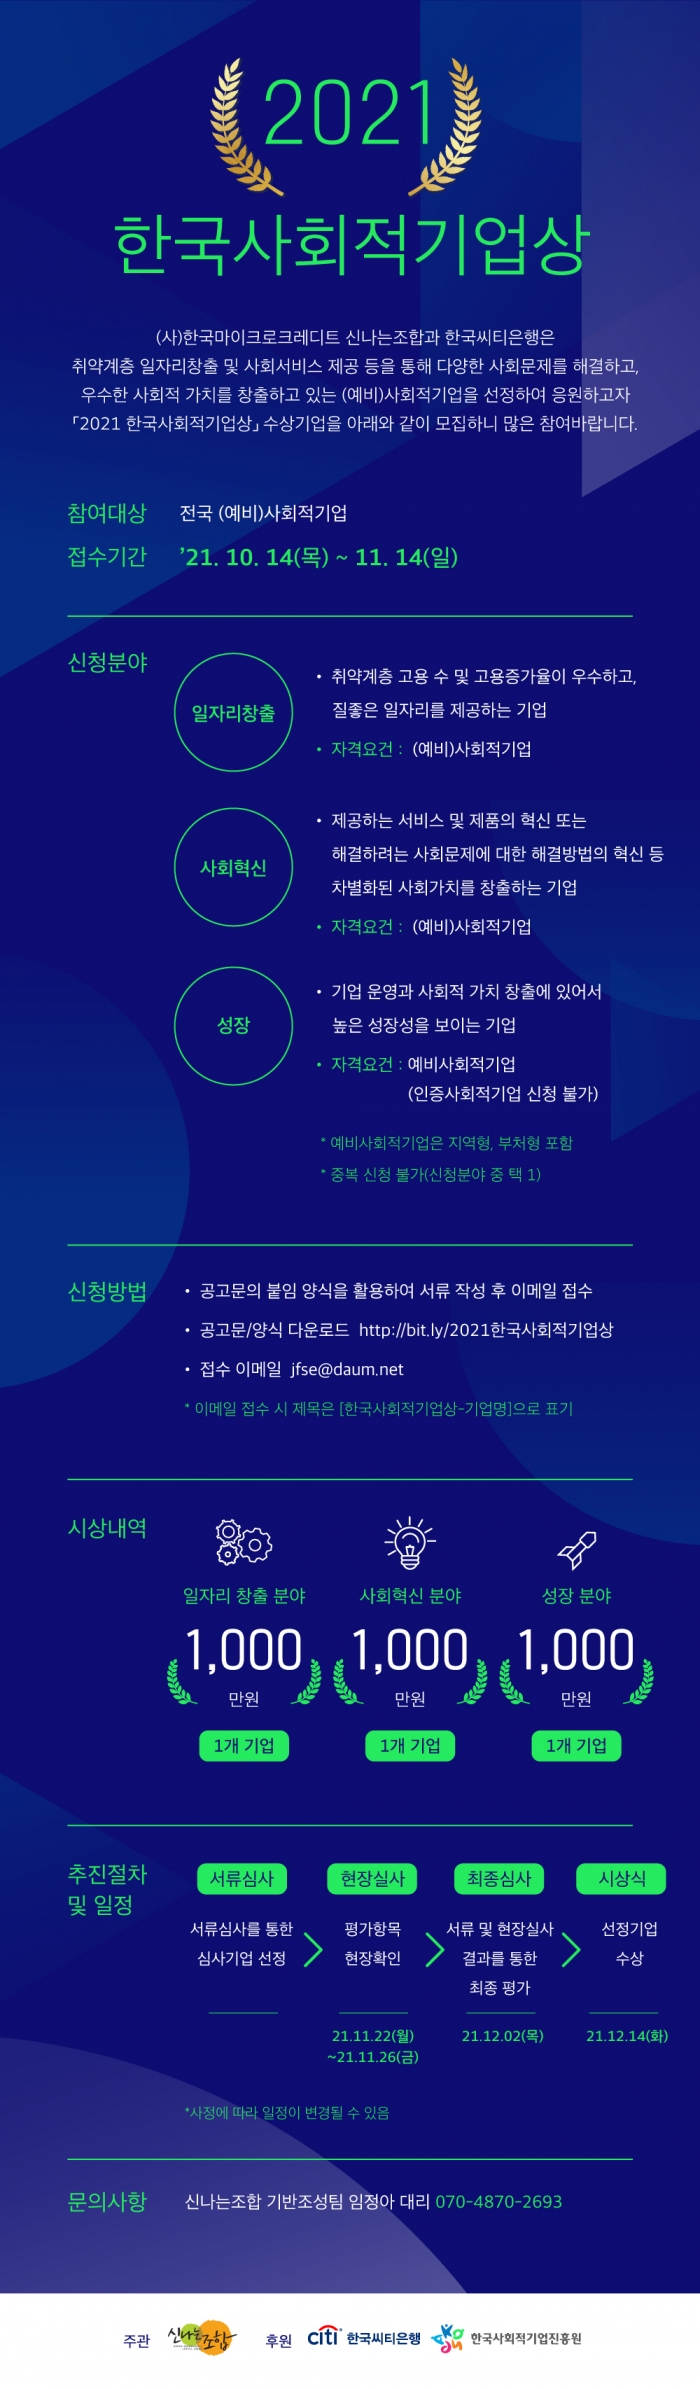 한국씨티은행 ‘2021 한국사회적기업상’ 공모 기사의 사진